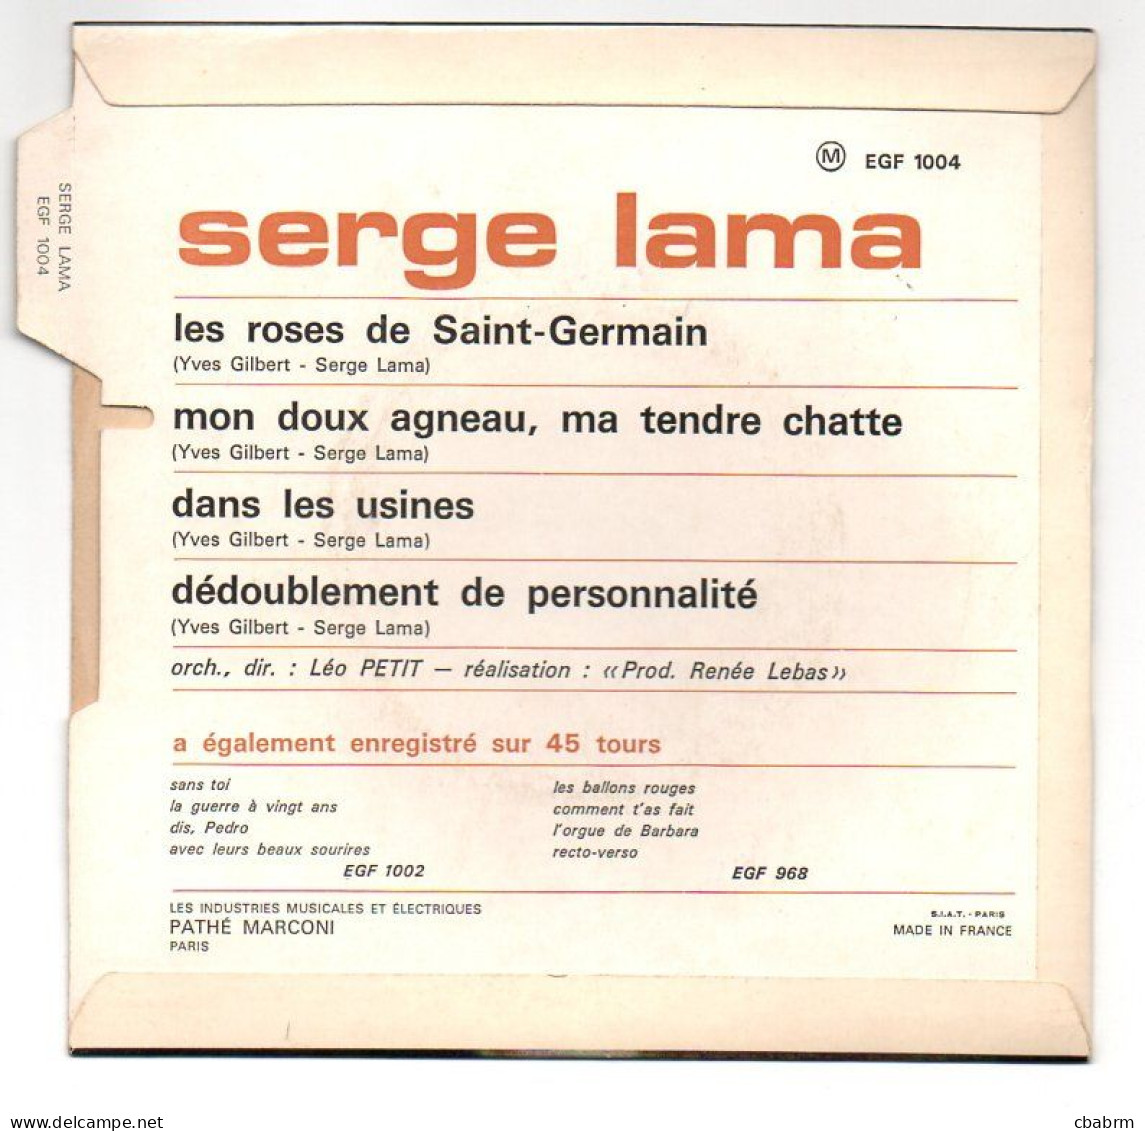 EP 45 TOURS SERGE LAMA LES ROSES DE SAINT-GERMAIN 1967 FRANCE EGF 1004 LANGUETTE - Otros - Canción Francesa